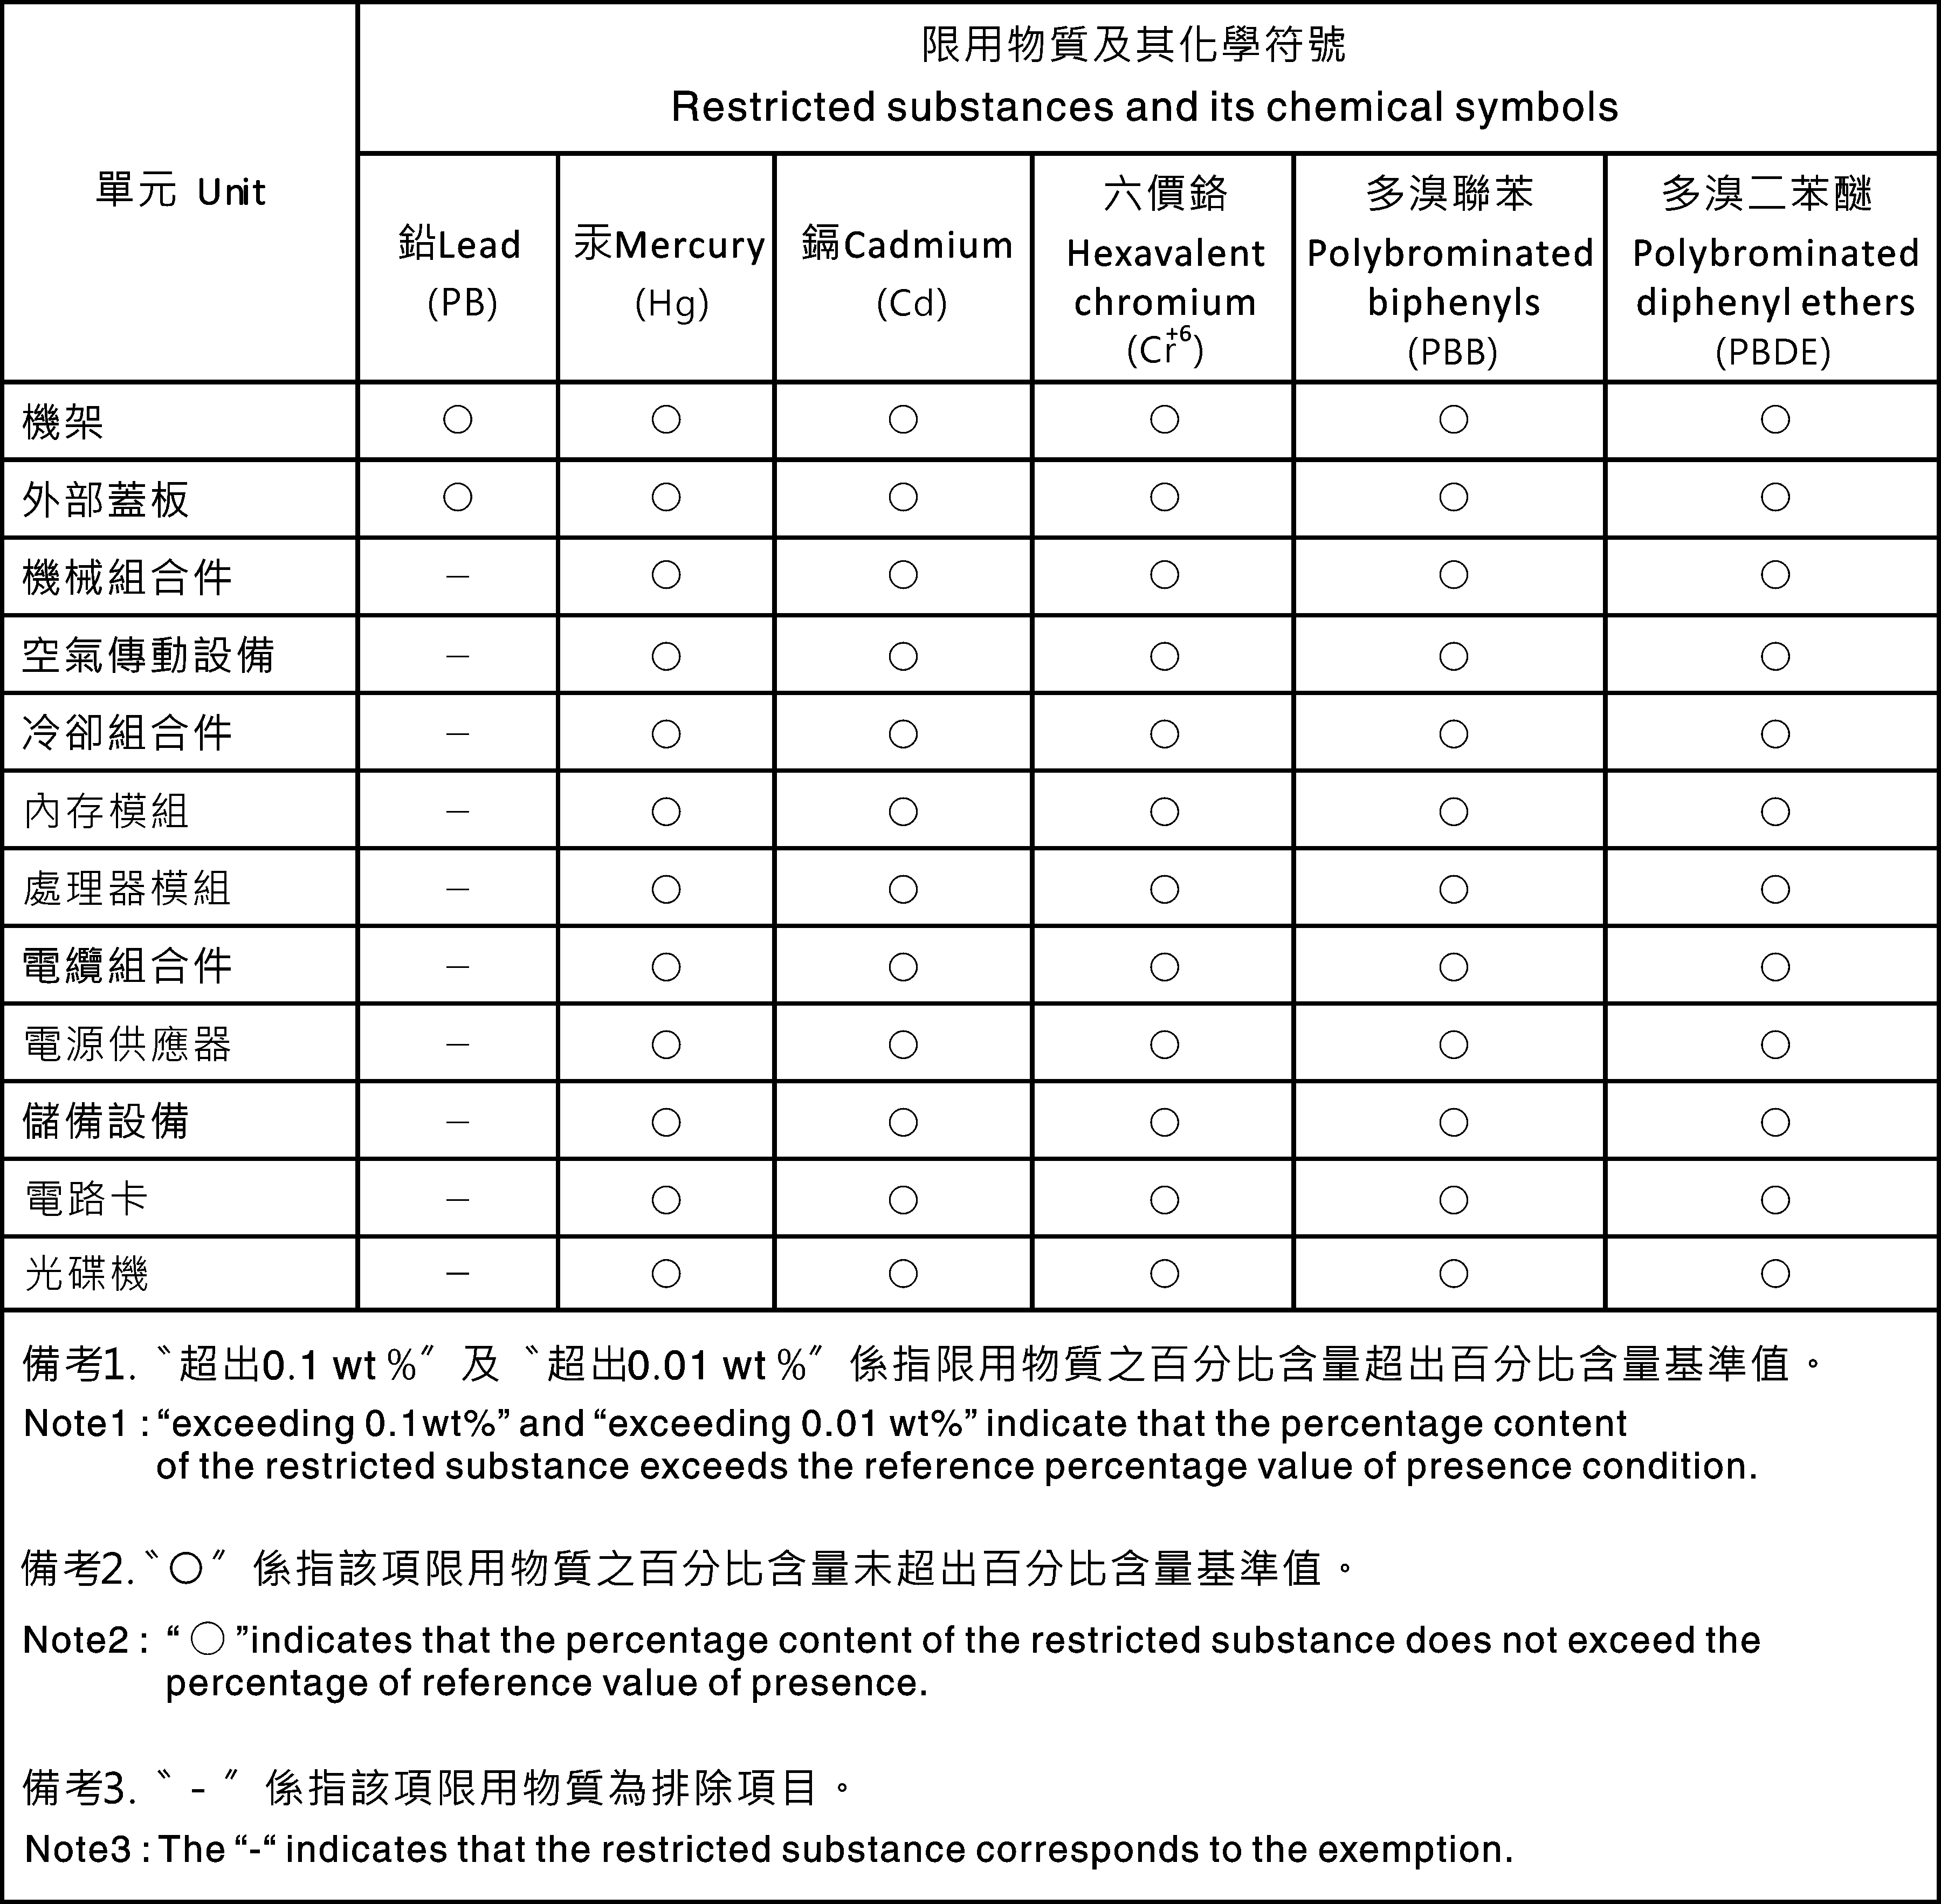 Dichiarazione di conformità di Classe A per Taiwan